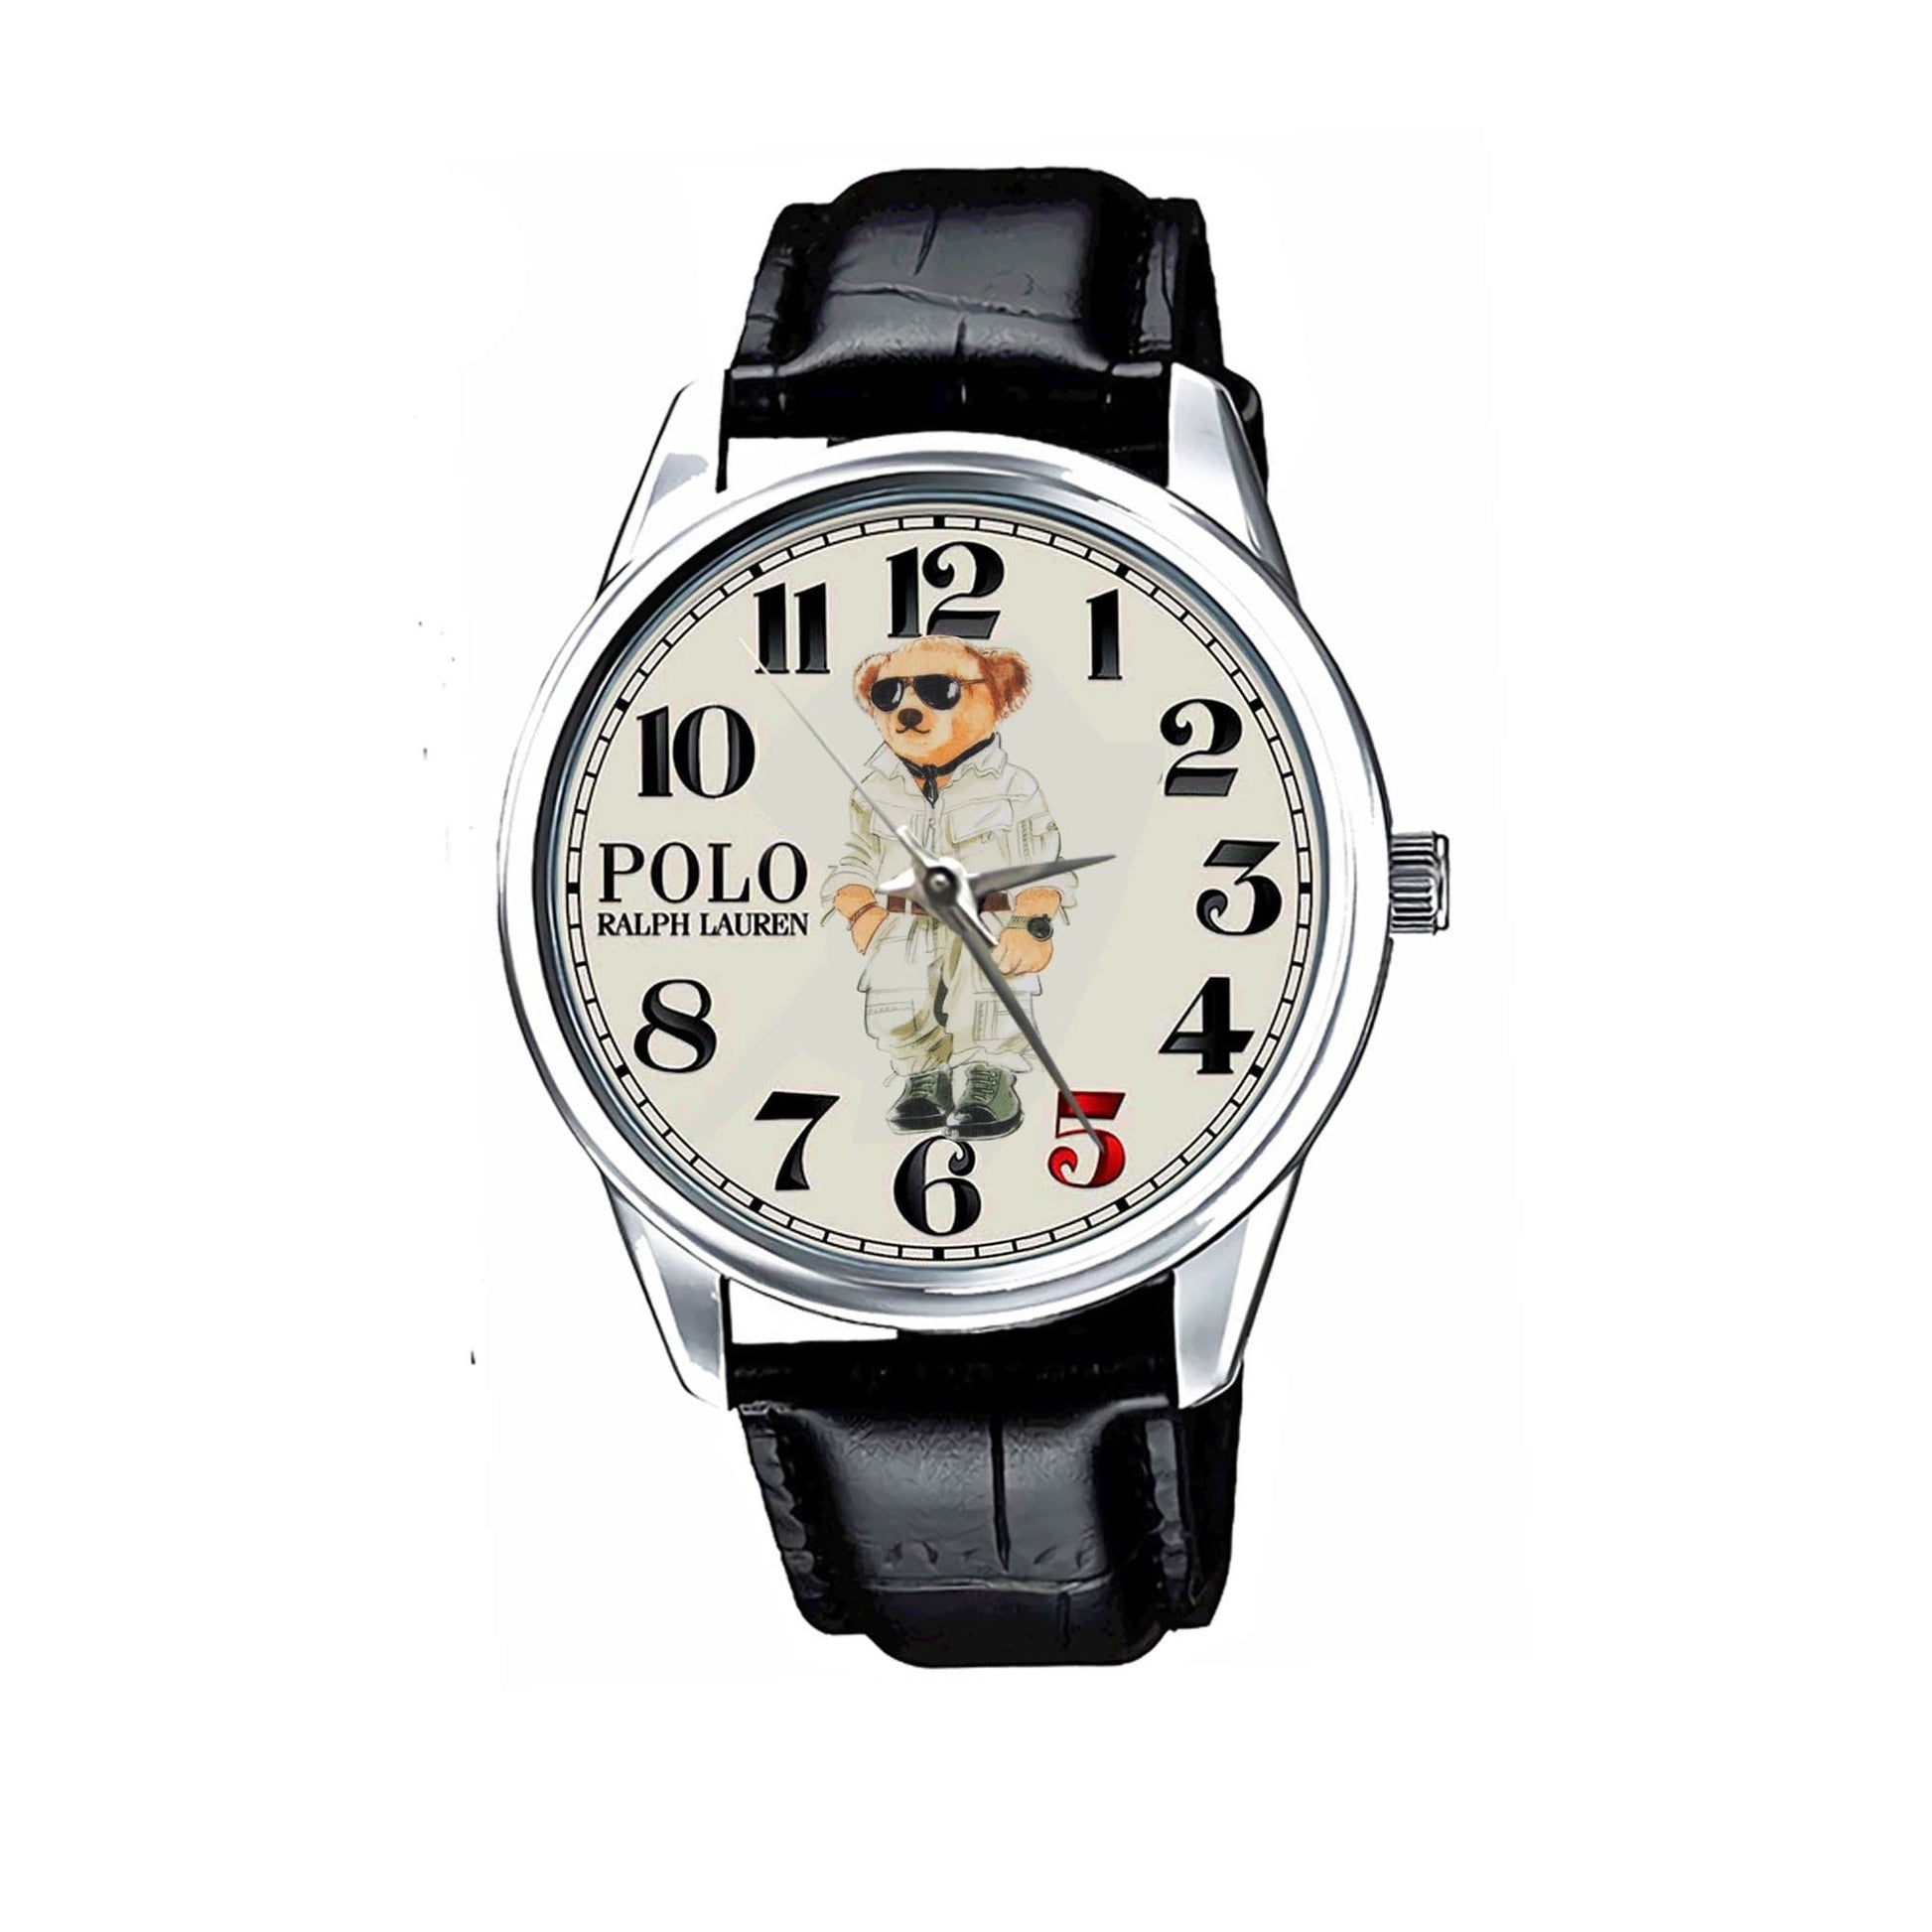 Ralph Lauren's Polo Bear Watches KP614